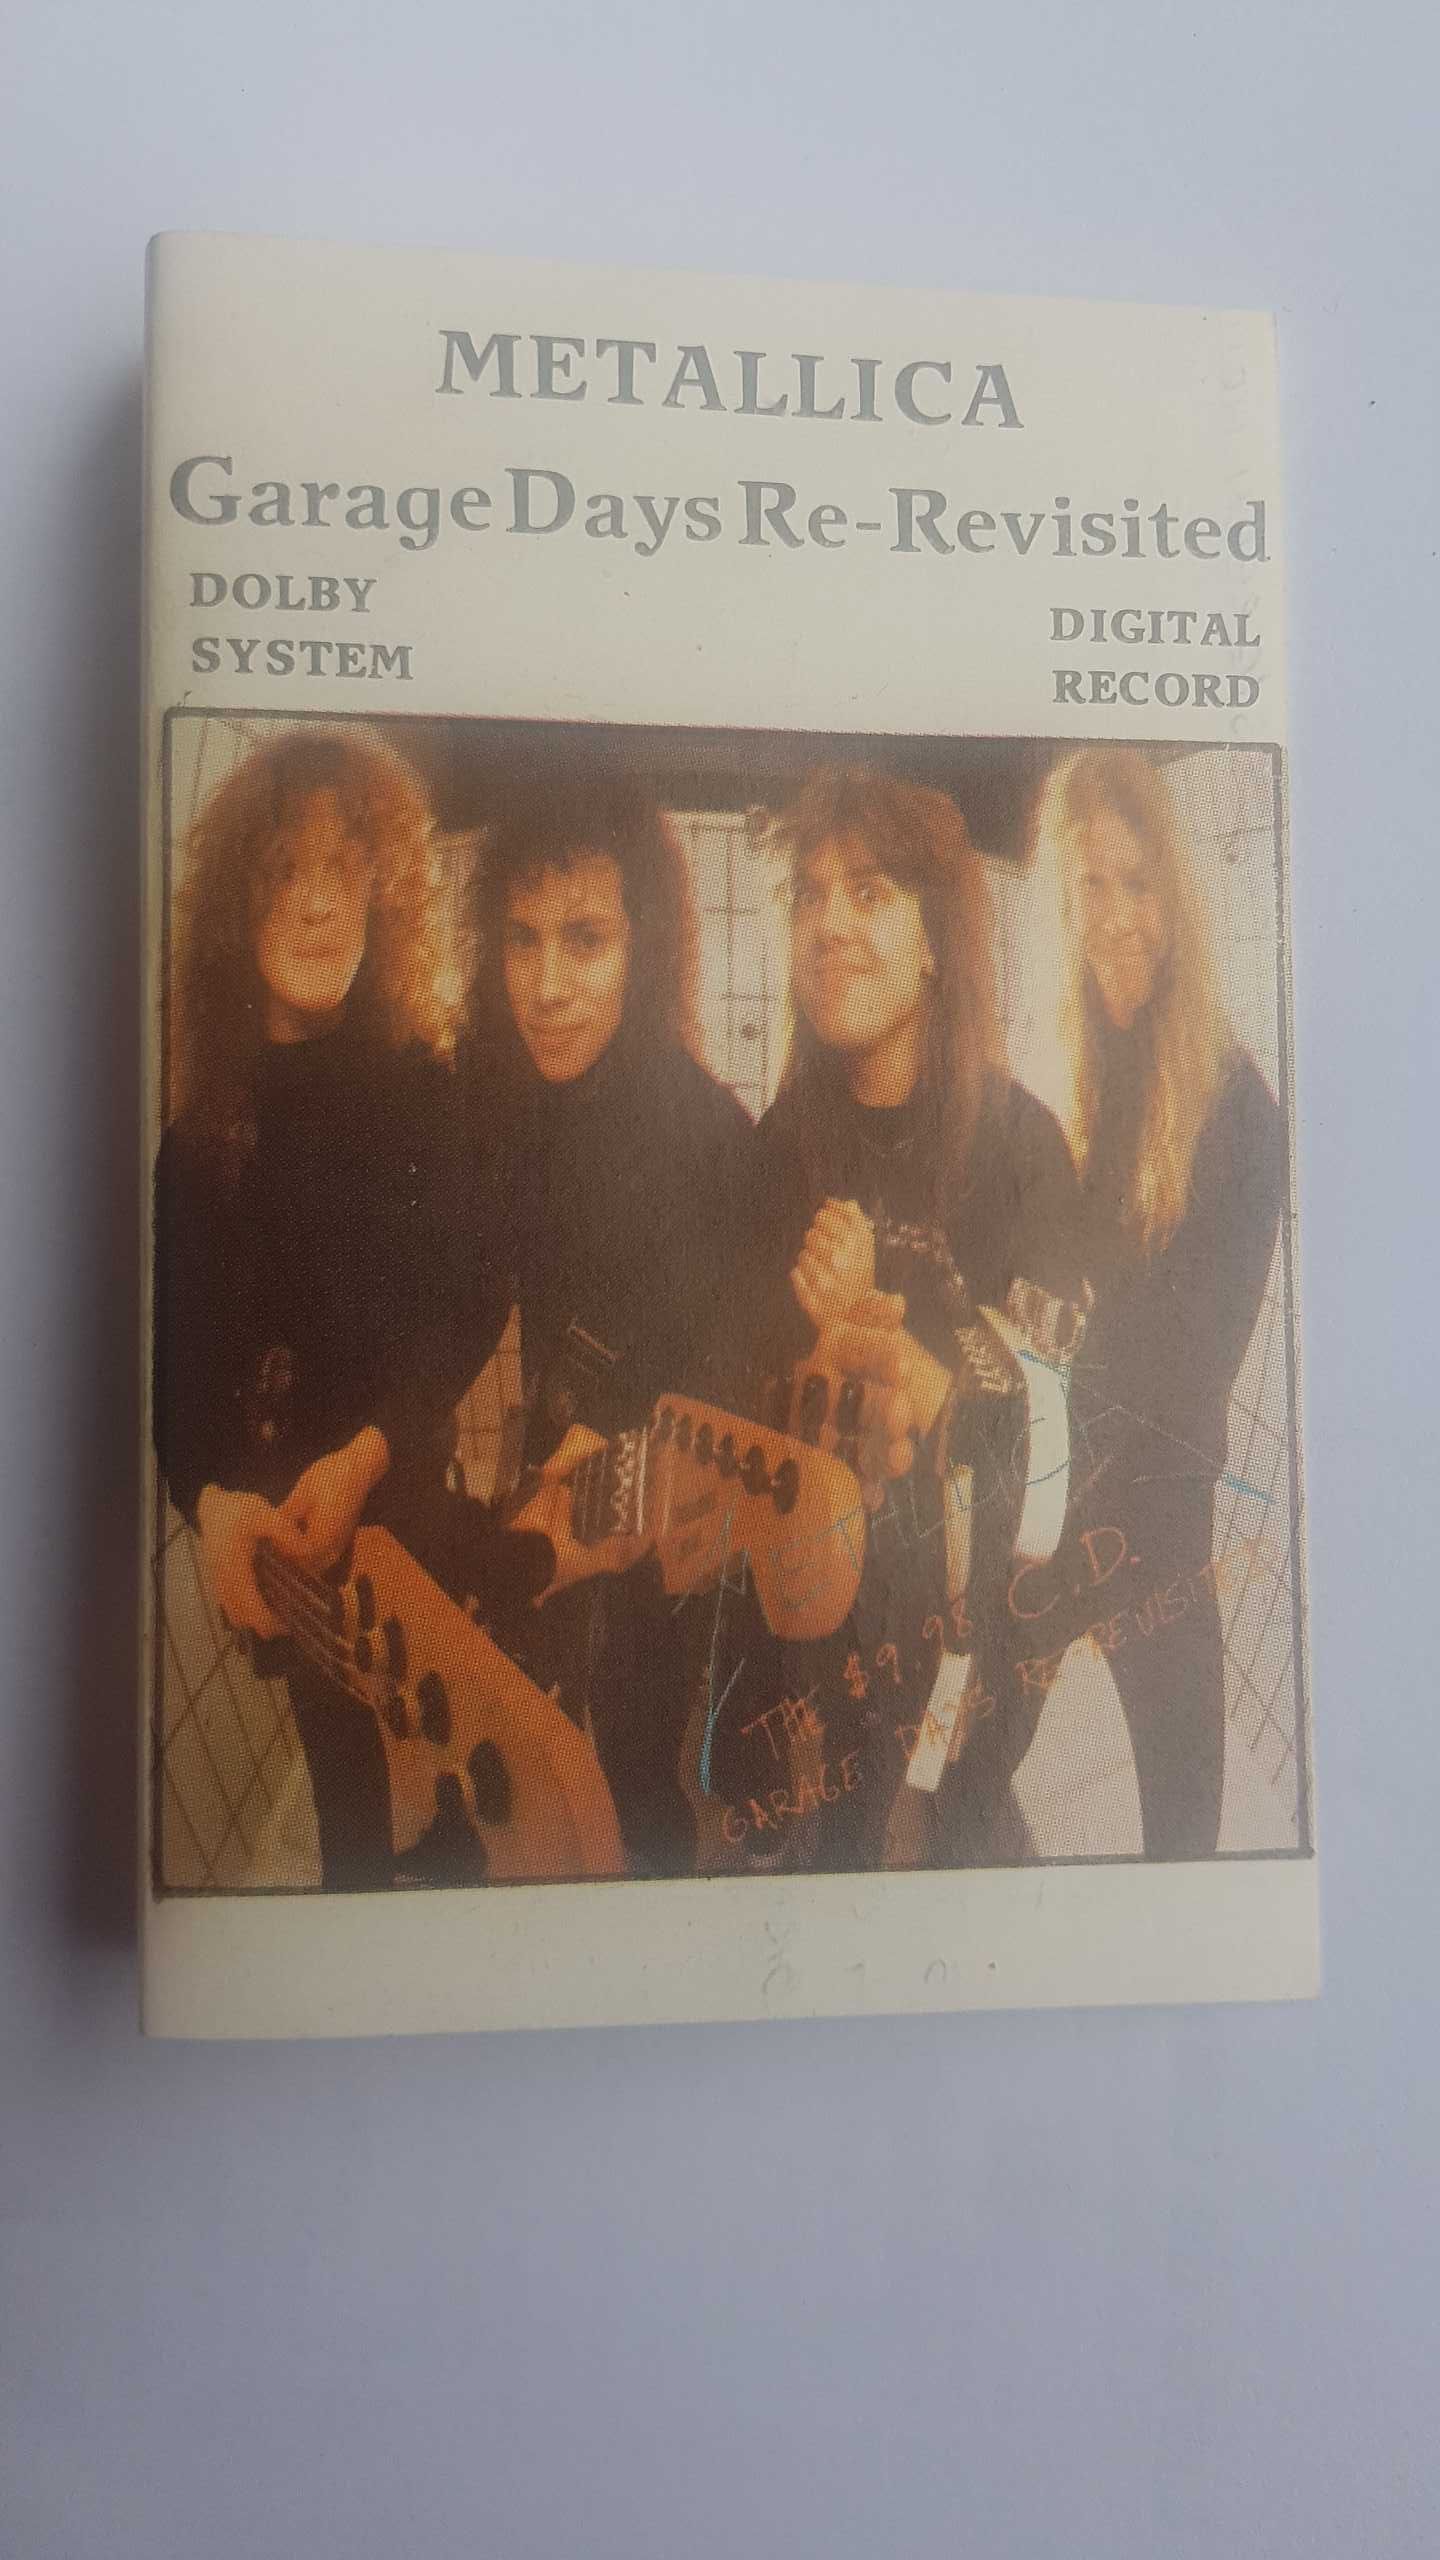 Metallica - Garage Days Re-Revisited caseta